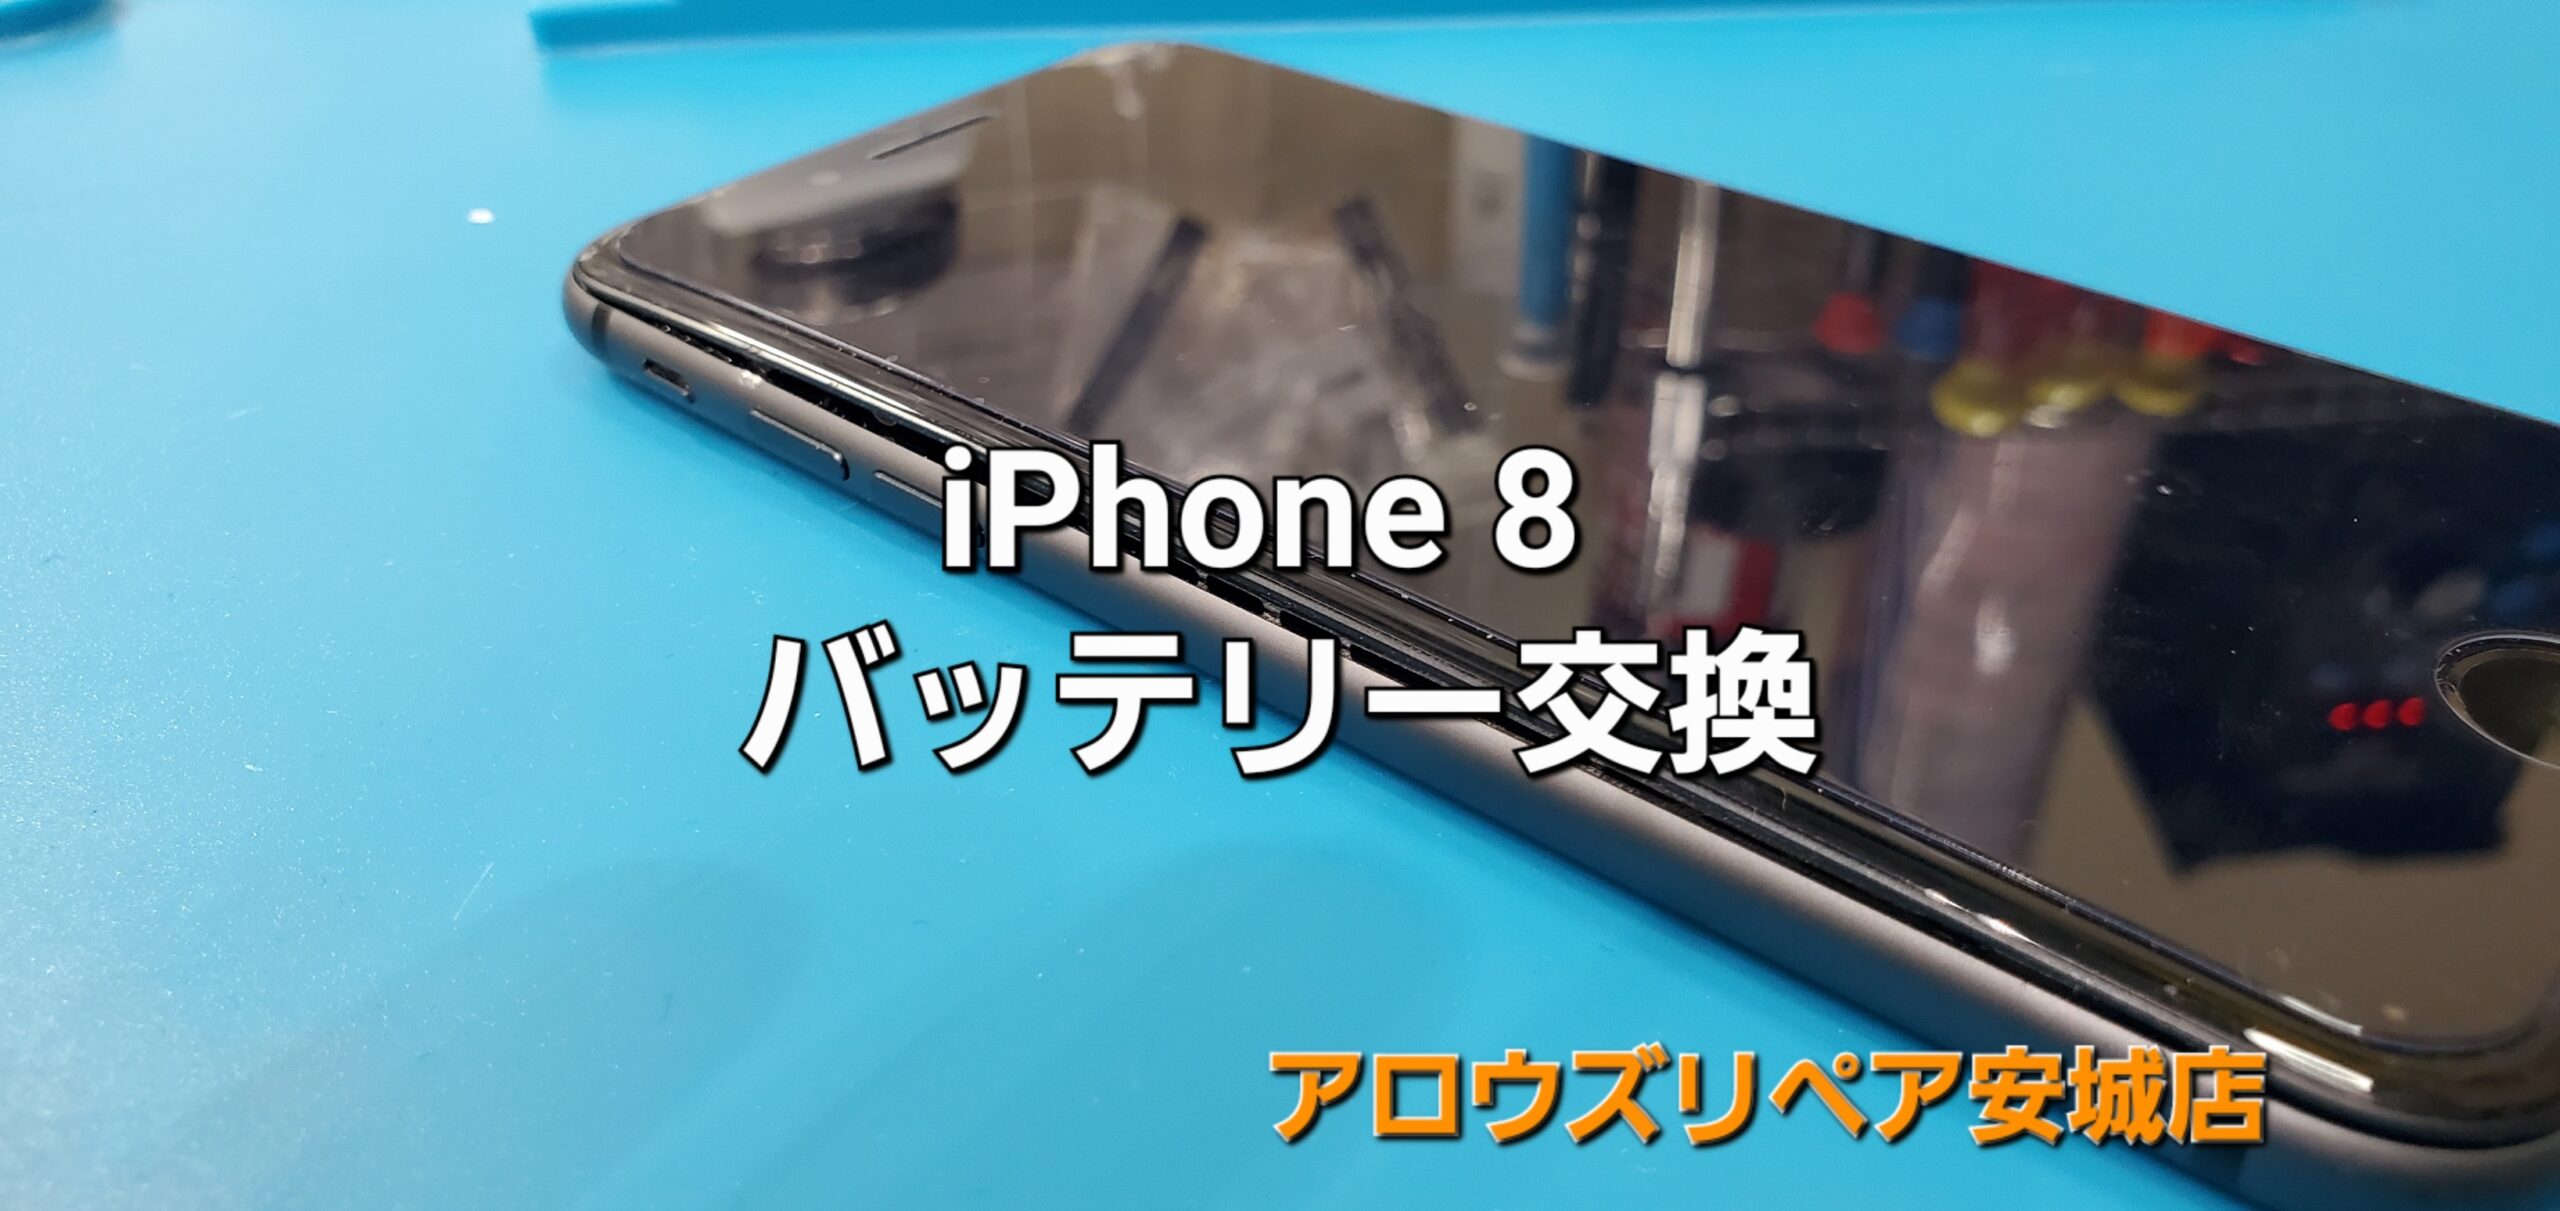 豊川市よりご来店、iPhone8 バッテリー交換修理のご紹介。|安城駅徒歩3分|iPhone・Switch・iPad修理ならアロウズリペア安城がおすすめ！JR安城駅から徒歩3分、データそのまま即日修理、Switch修理もお任せ下さい。お客様のお悩み解決致します。